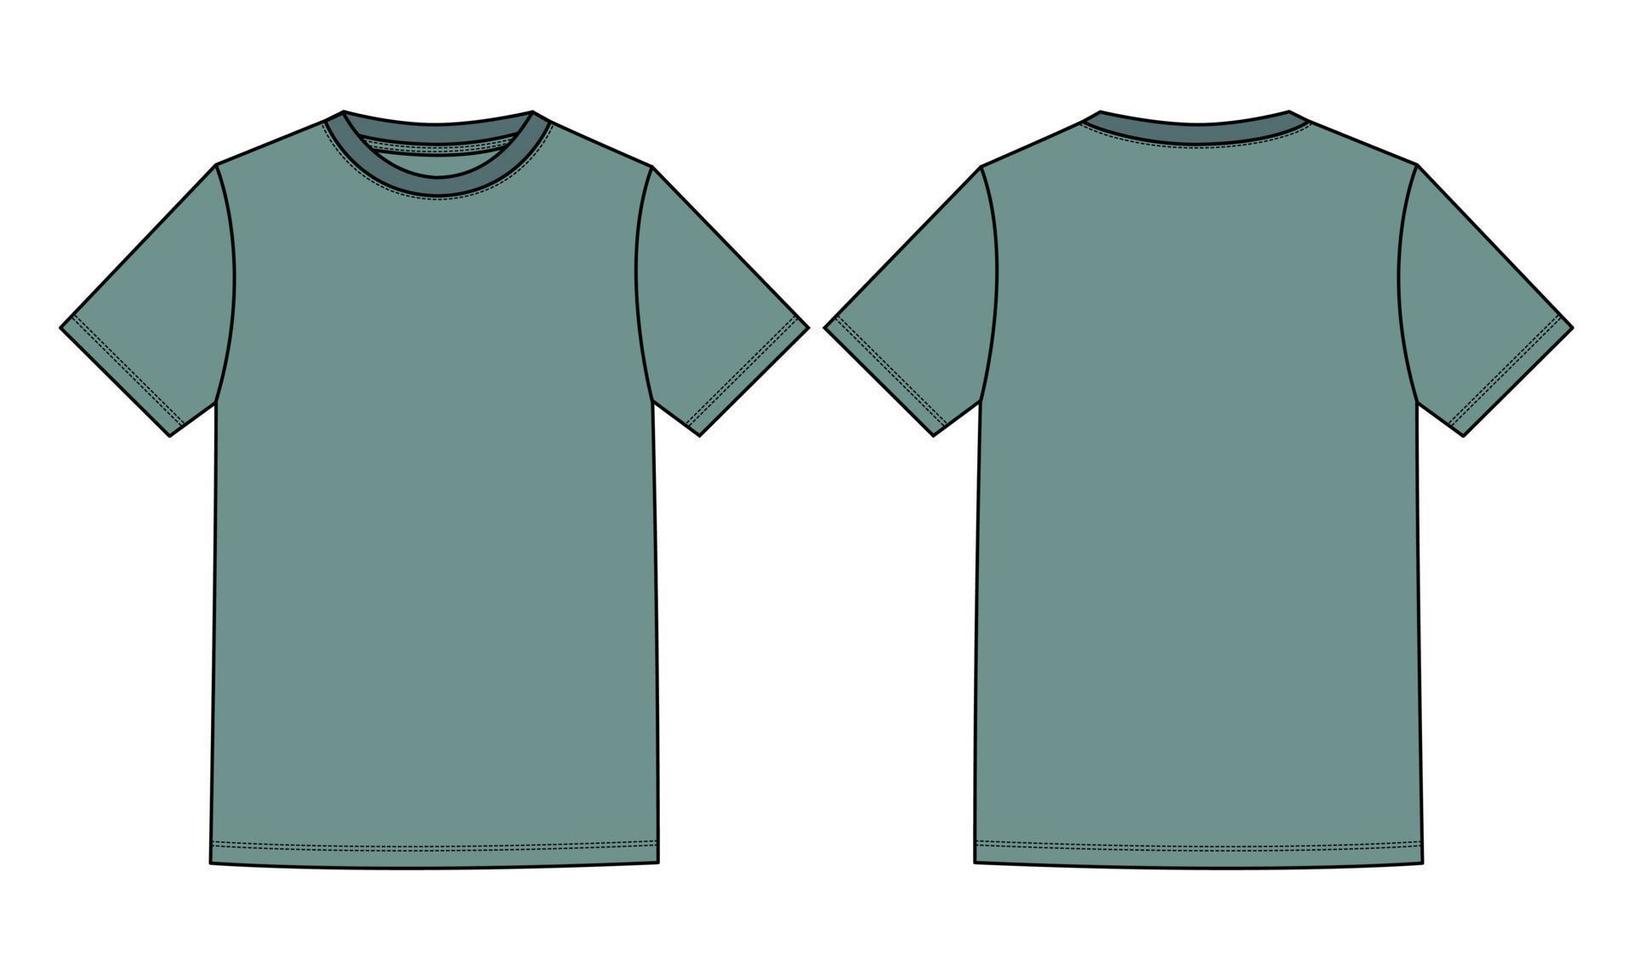 camiseta básica de manga corta moda técnica boceto plano ilustración vectorial plantilla de color verde claro vistas frontal y posterior aisladas en fondo blanco. vector